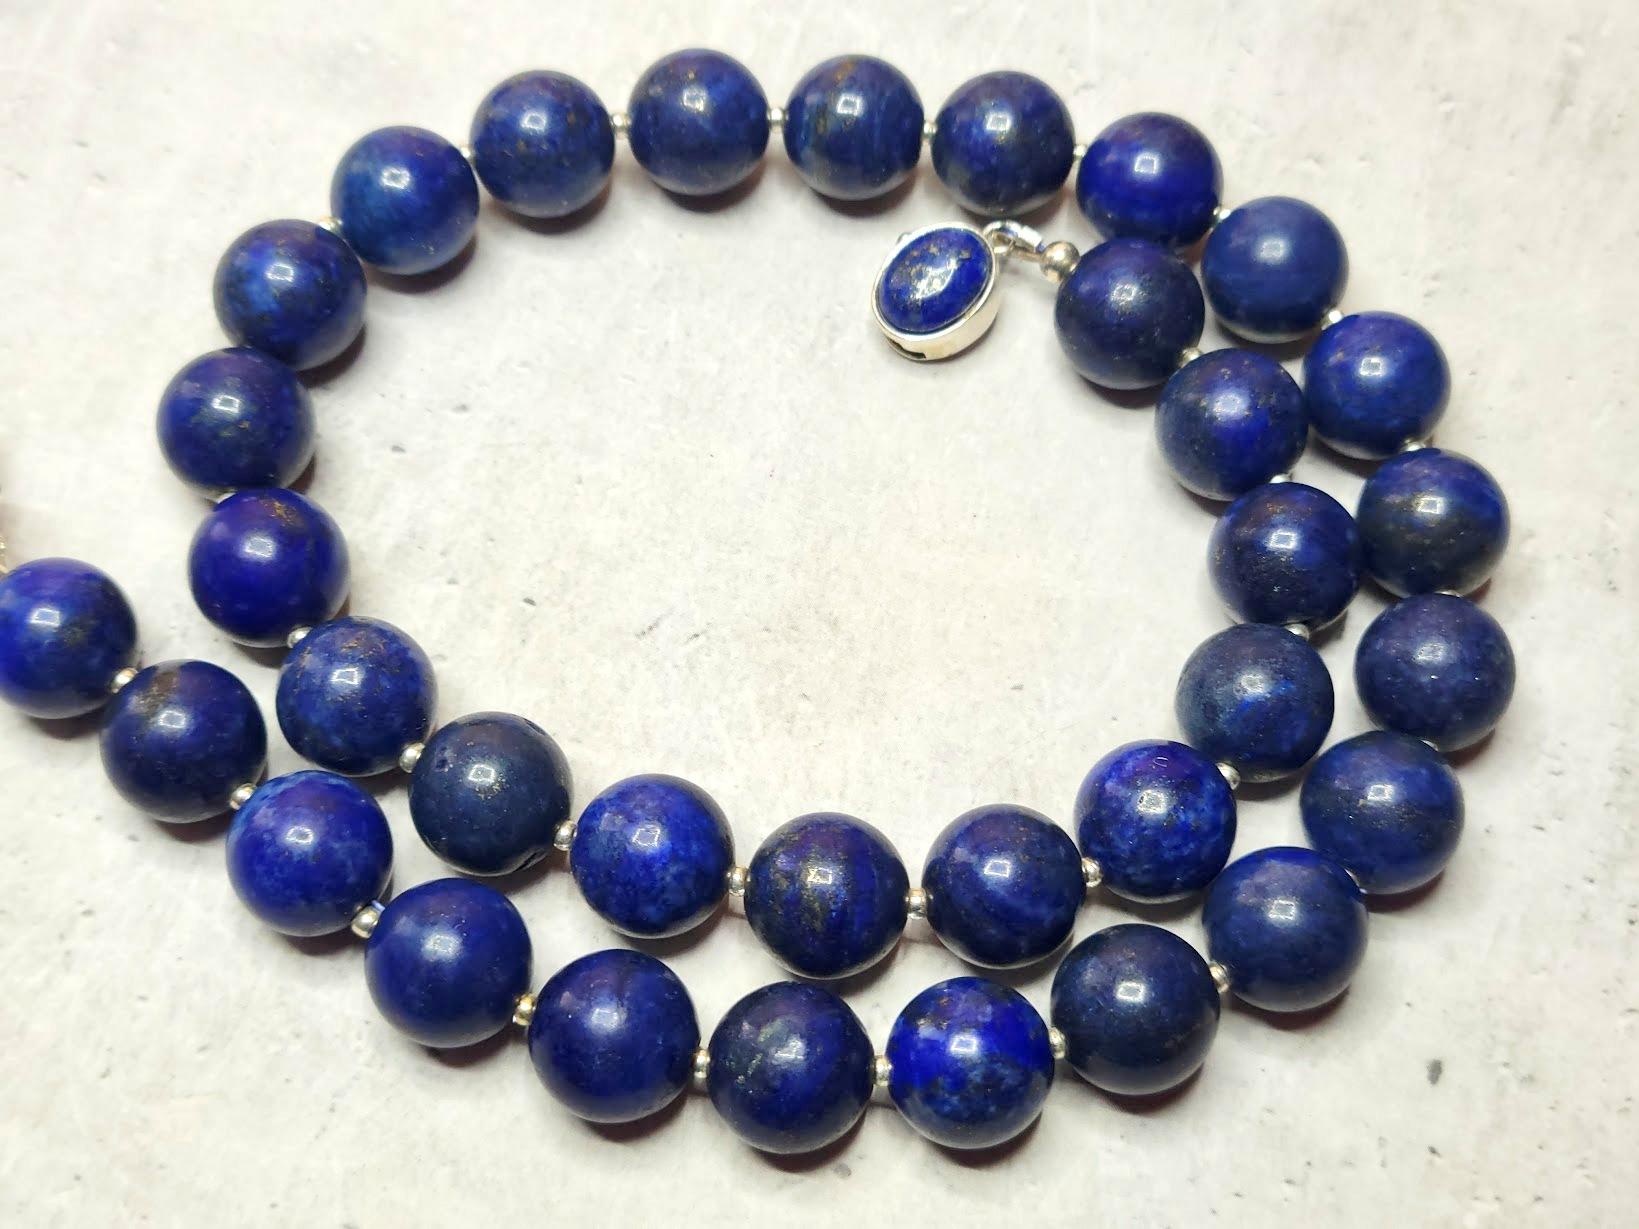 Le collier mesure 44,5 cm de long et les perles rondes et lisses mesurent 12 mm.
Les perles de lapis-lazuli sont bleu foncé. Le lapis-lazuli présente des taches visibles de calcite et de pyrite dorée.
Couleur naturelle, non teintée. Aucun traitement